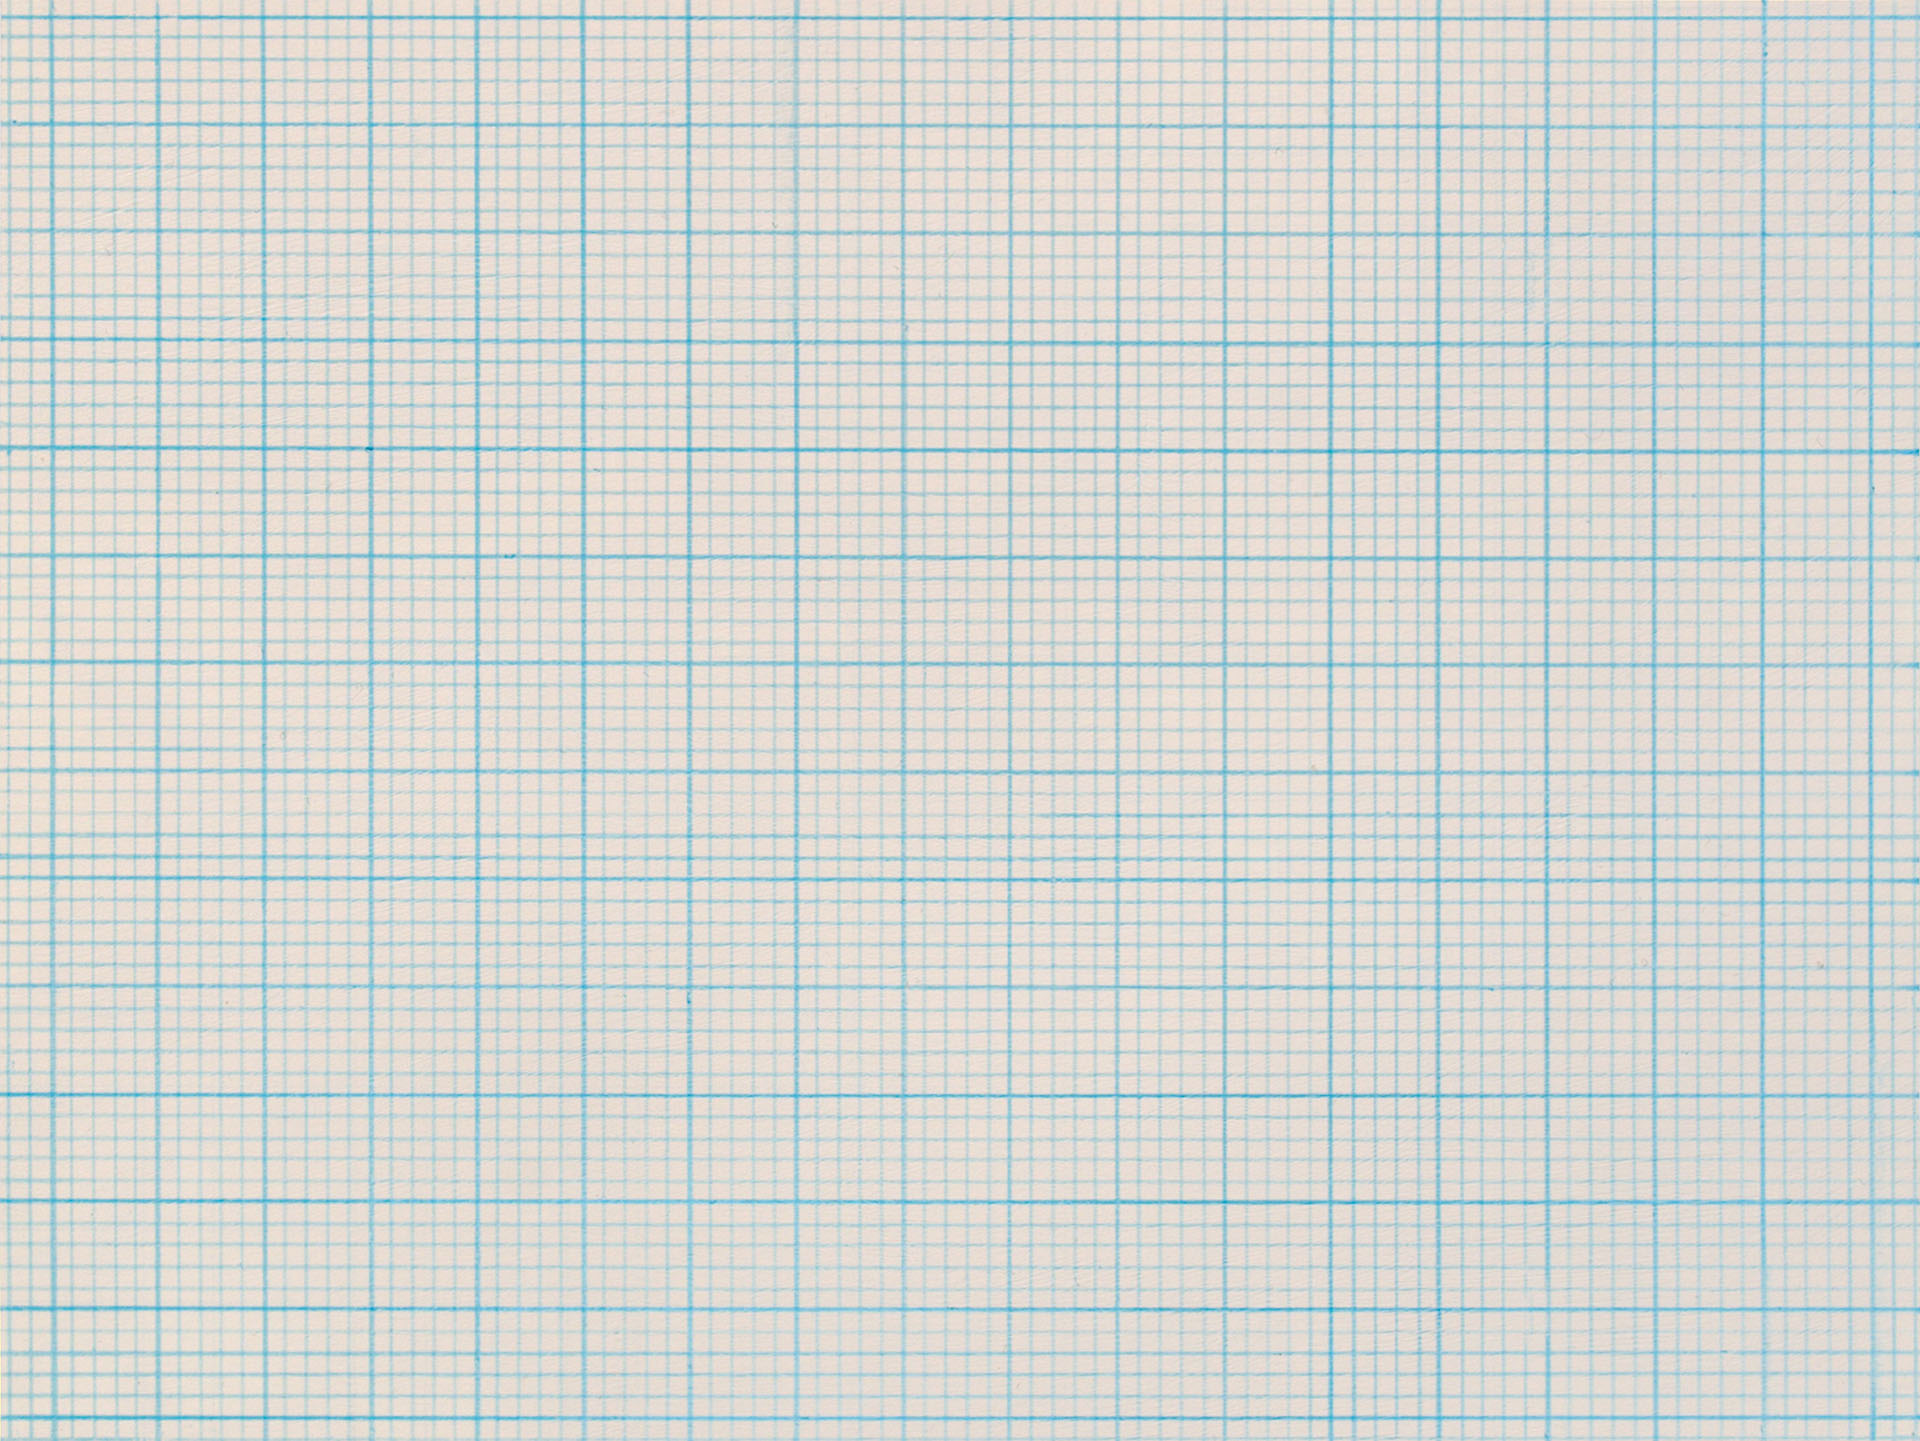 Grid 35, 2014, acrylic on bristol board, 202 x 269mm